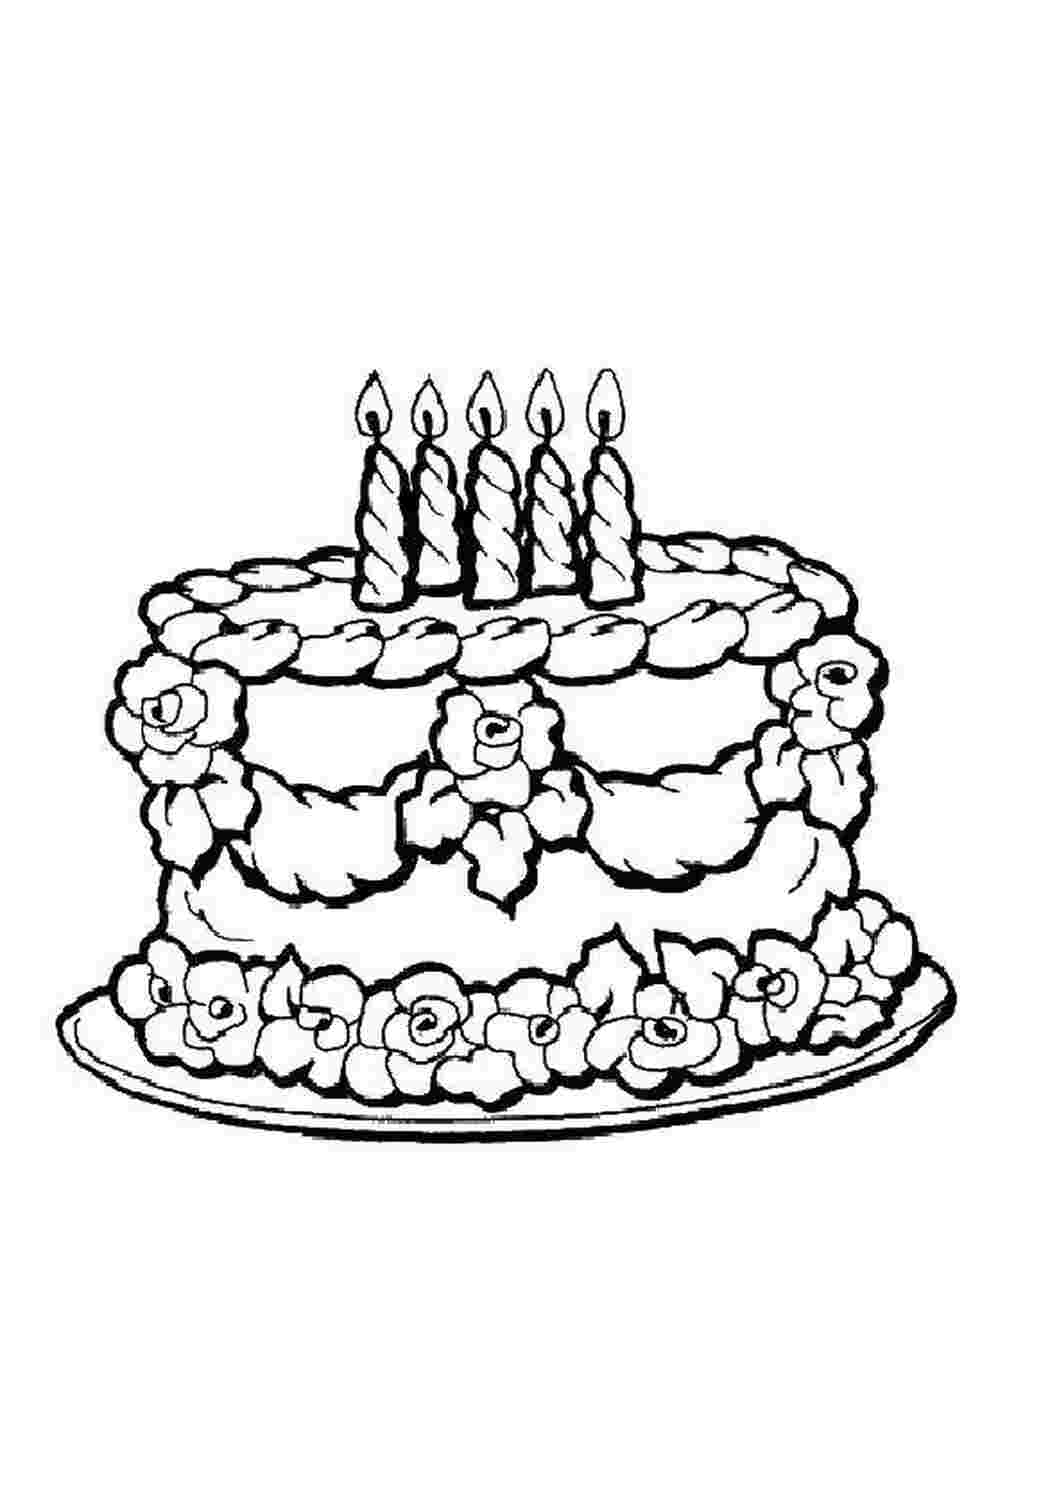 Раскраски Торт со свечами к празднику торты торты, день рождения, свечи